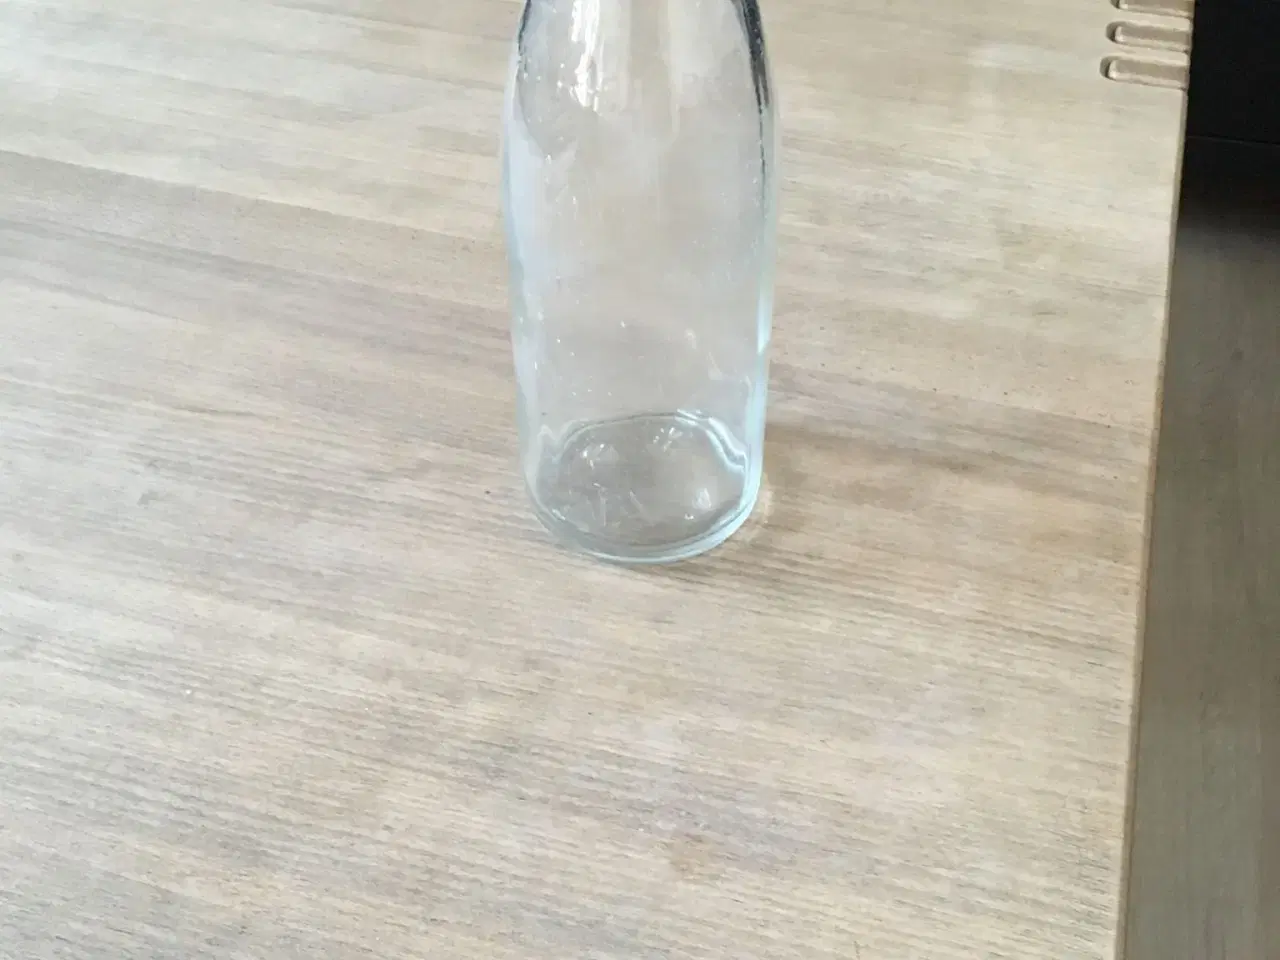 Billede 2 - Mælkeflaske